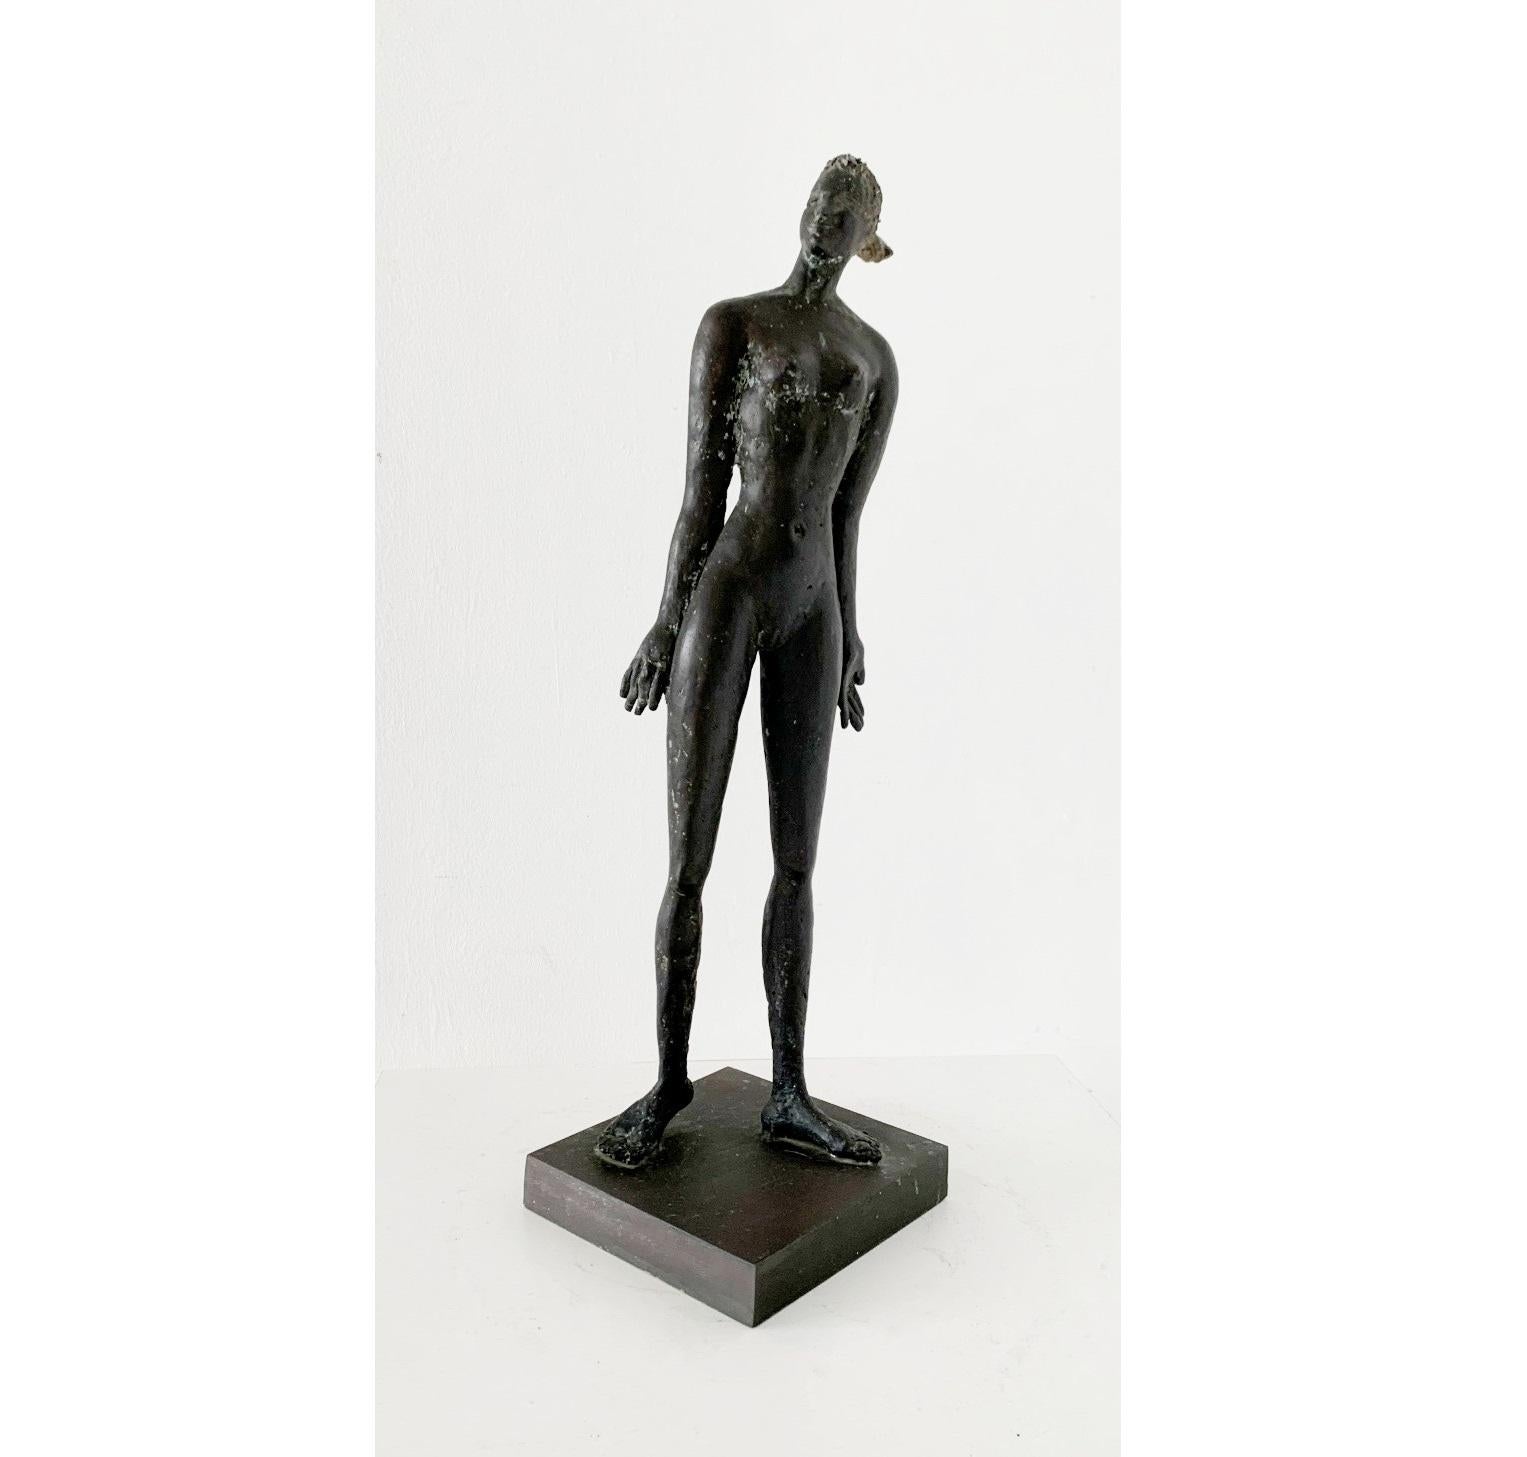 Figurative Sculpture Giuseppe del Debbio - Une femme . Sculpture figurative contemporaine en bronze, Nu féminin, artiste italien